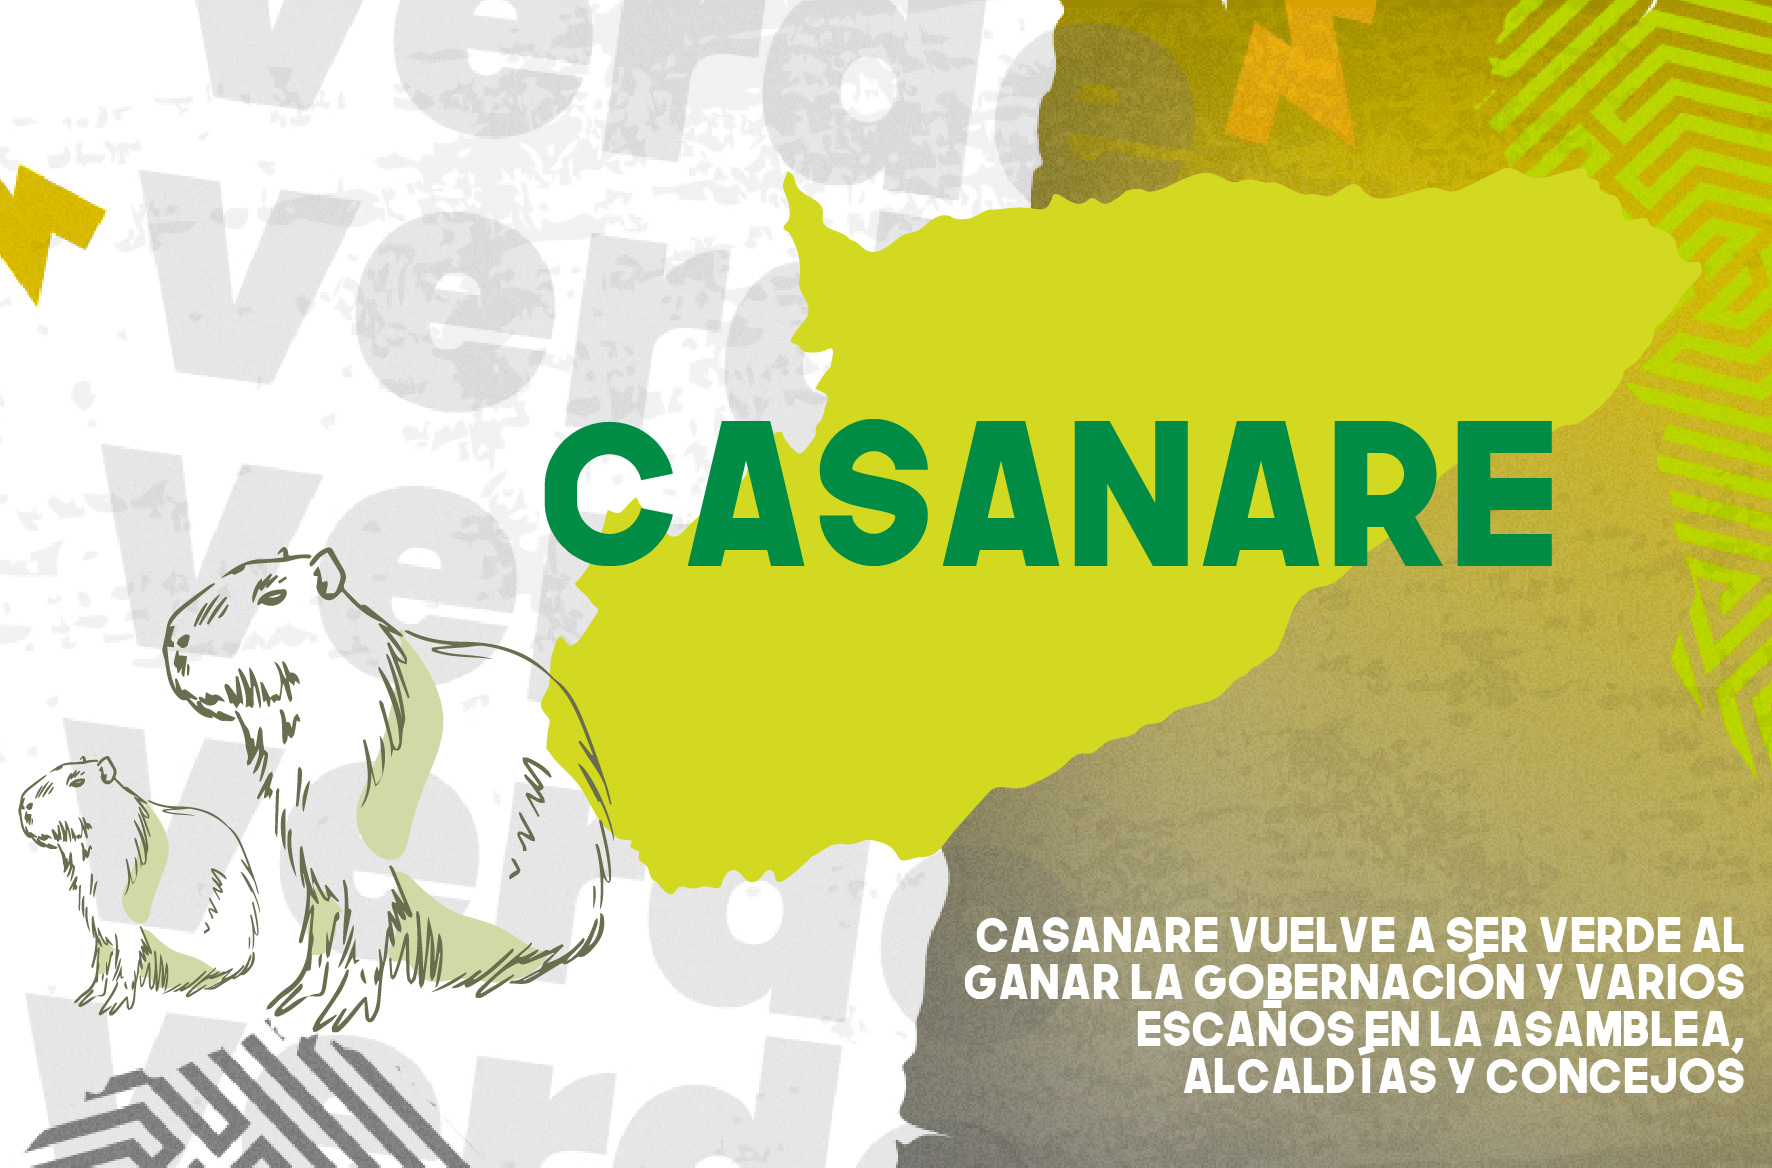 Casanare vuelve a ser Verde al ganar la gobernación y varios escaños en la asamblea, alcaldías y concejos